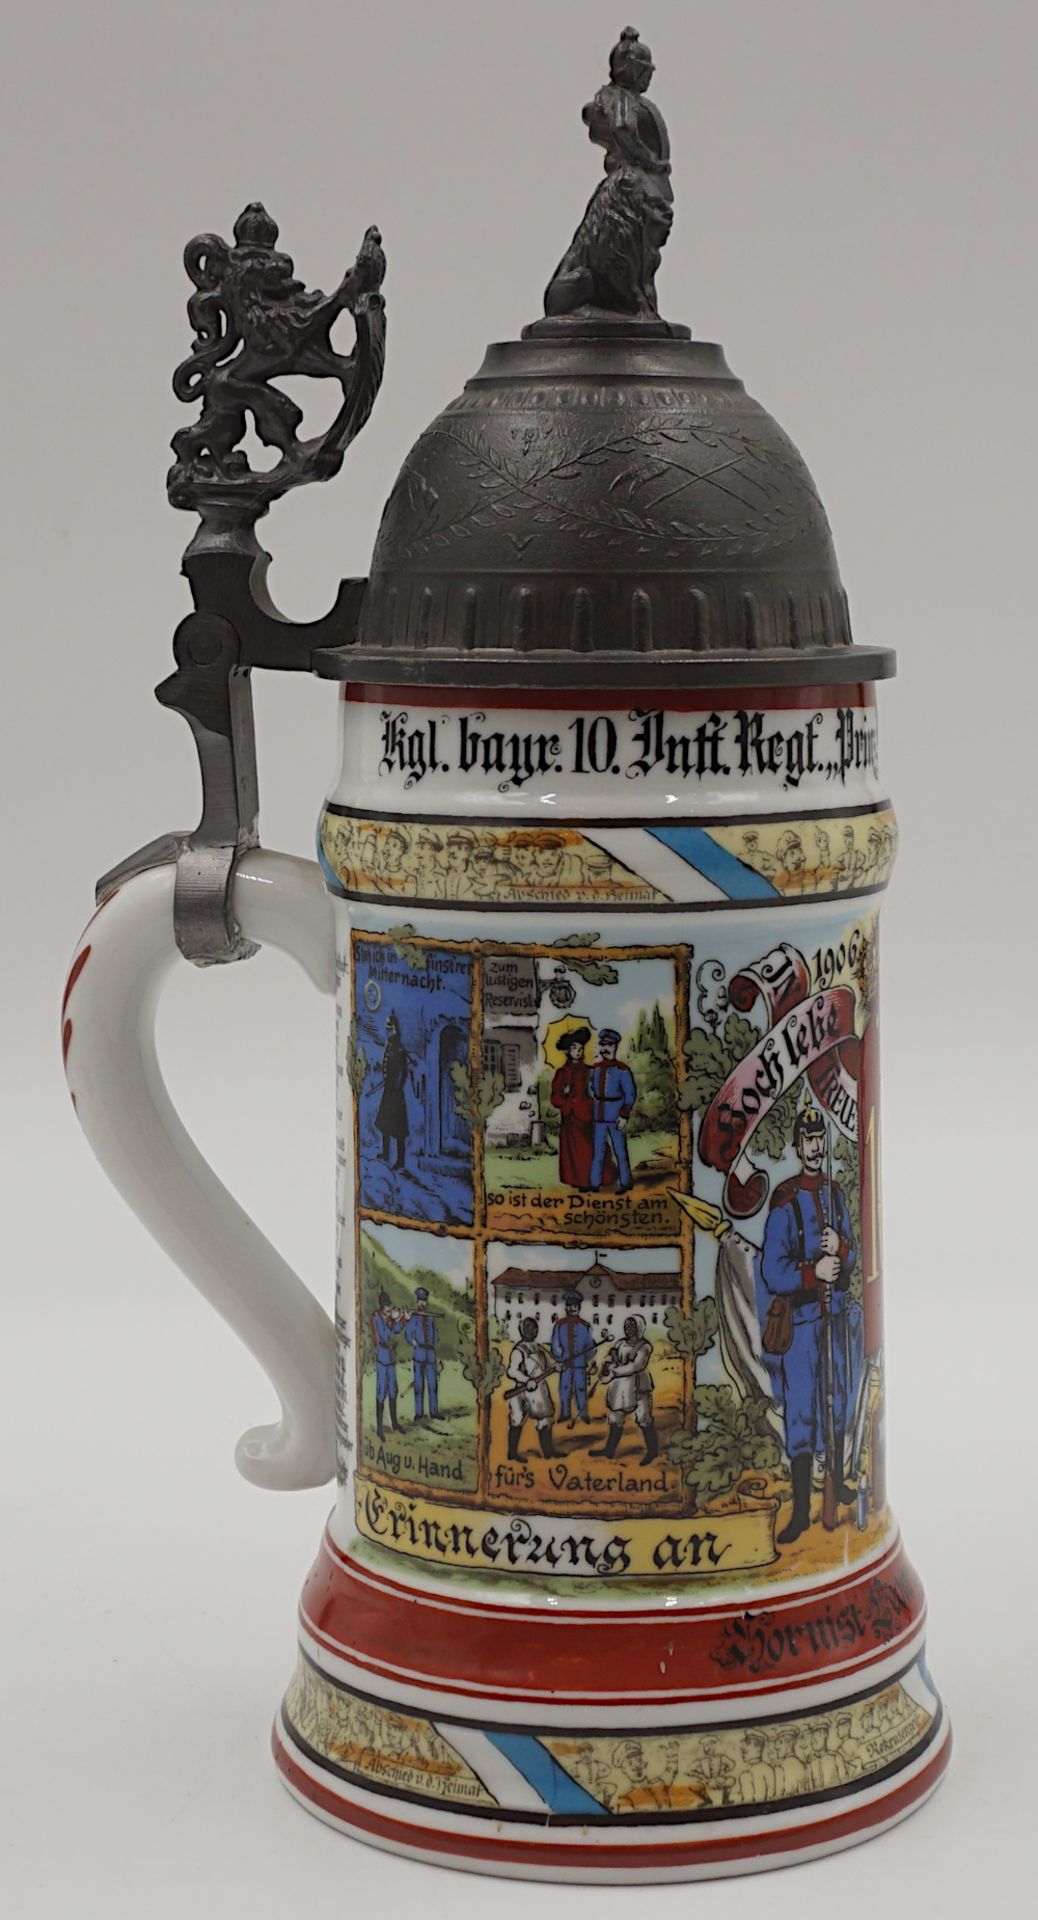 1 Reservistenkrug Porzellan bez. "Kgl. bayr. 10. Inft. Regt. Prinz Ludwig V. Comp. Ingolstadt 1906-0 - Image 2 of 6